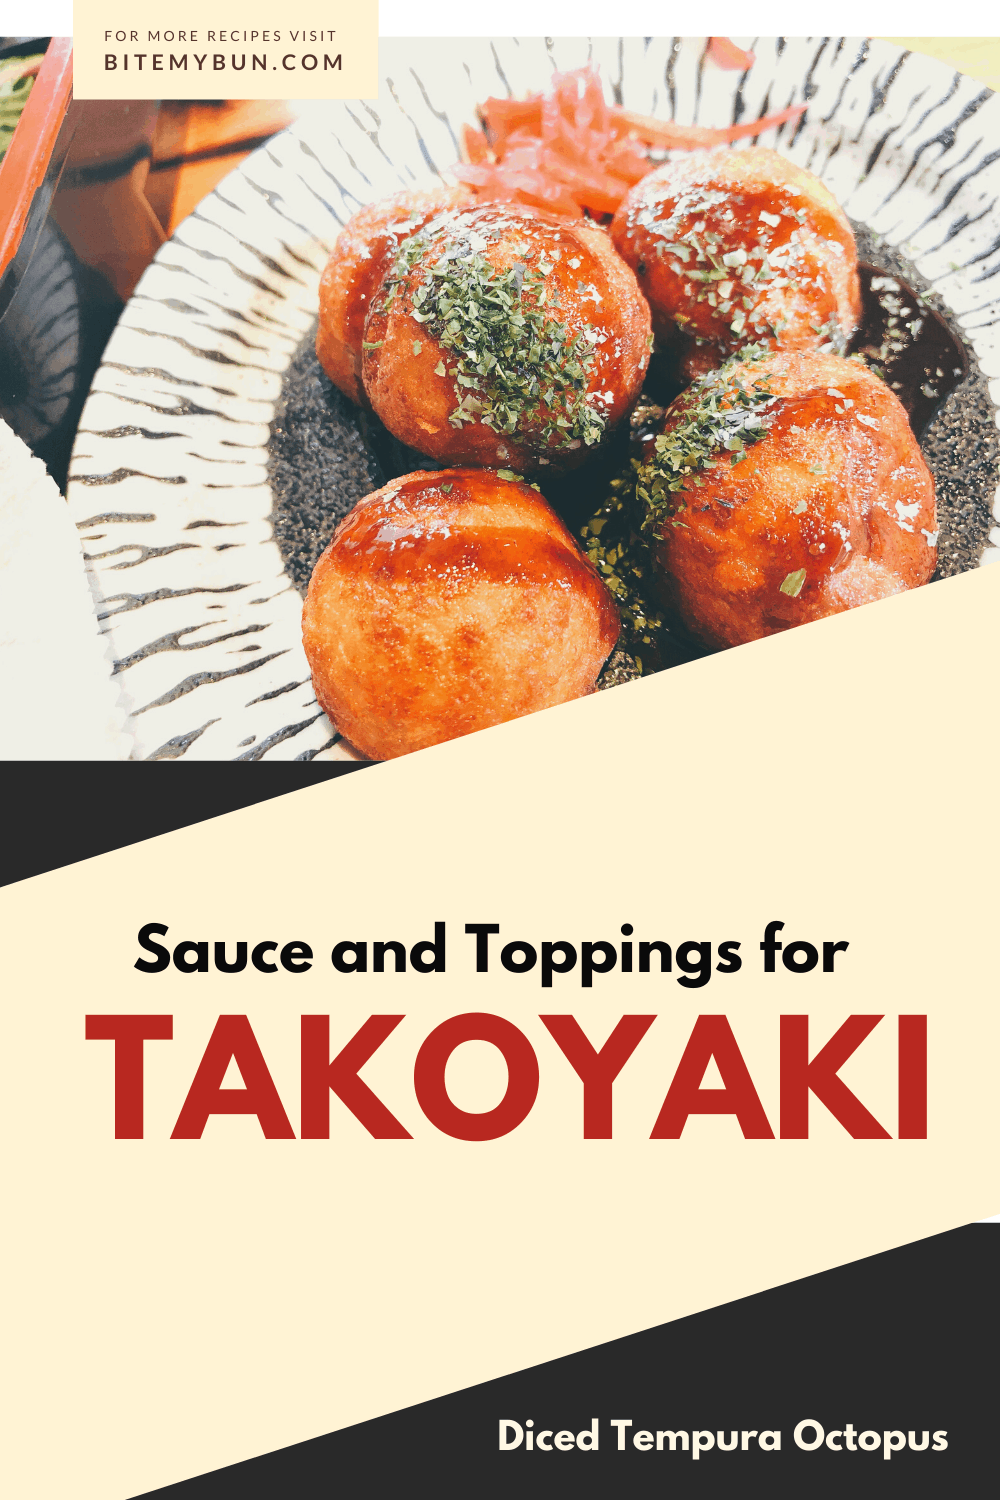 takoyakisås och toppings